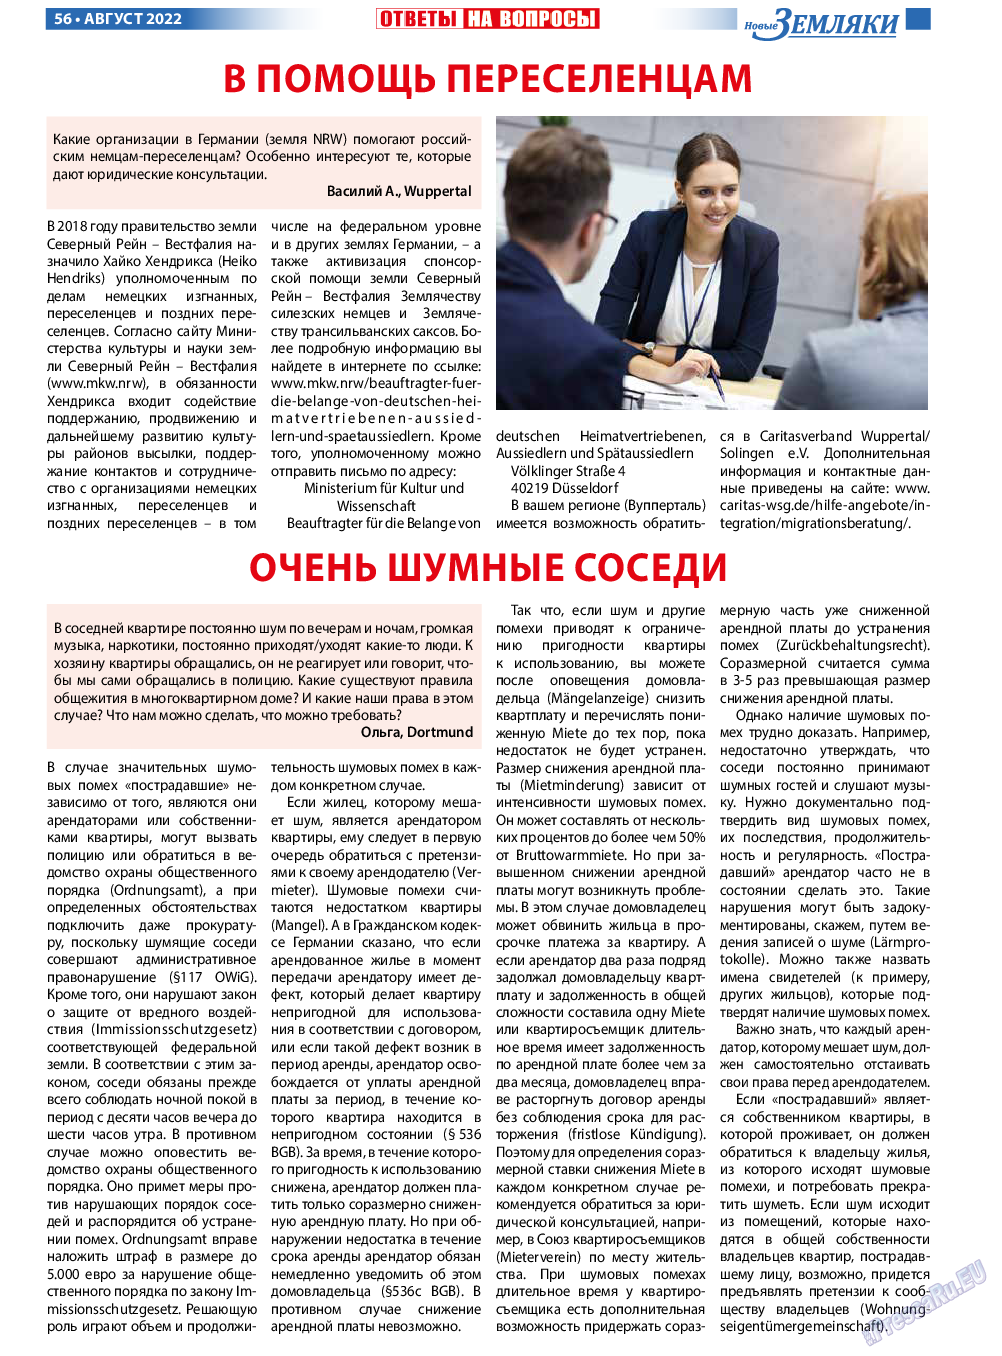 Новые Земляки, газета. 2022 №8 стр.56